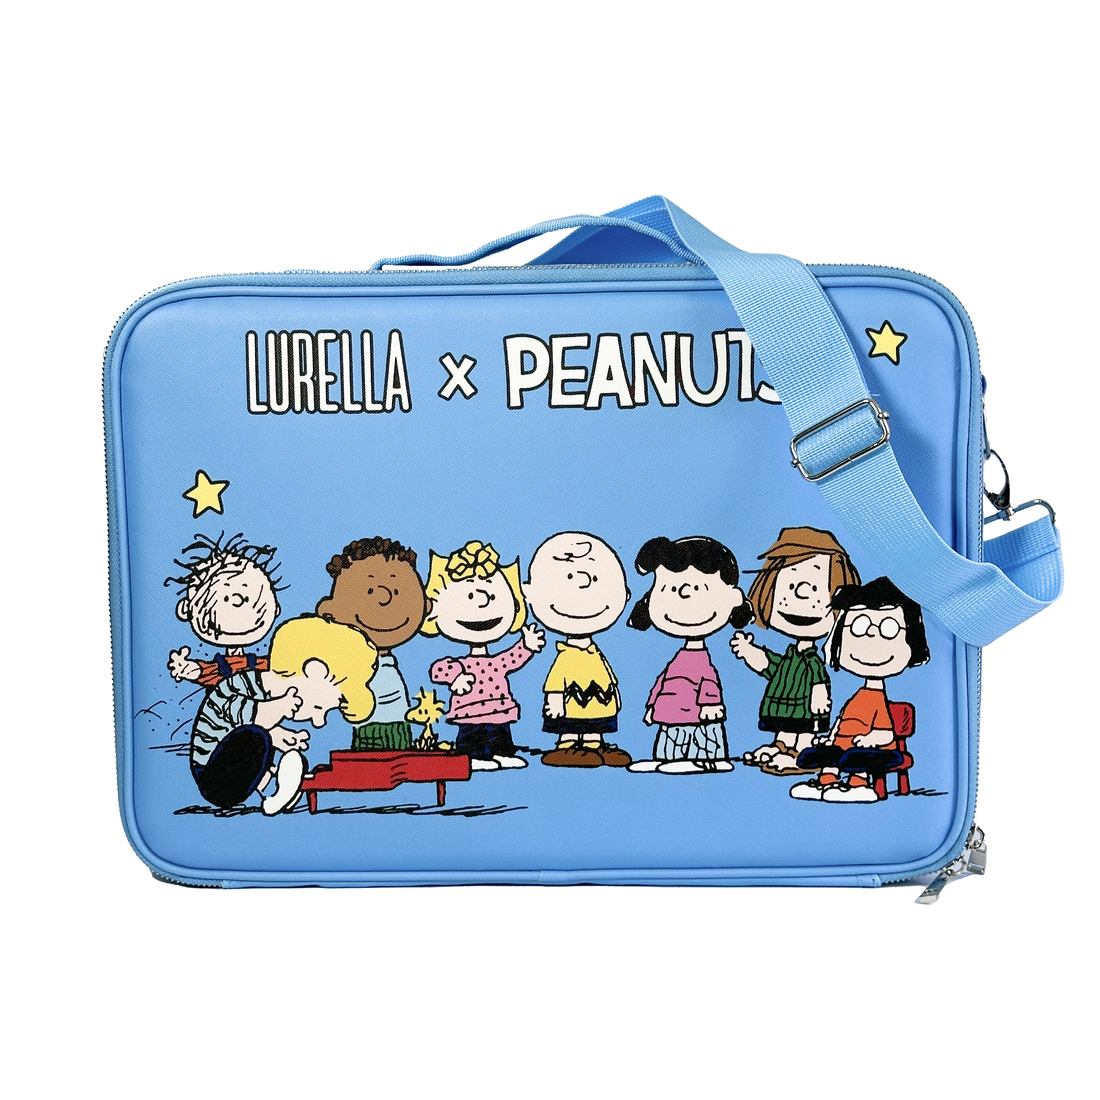 Lurella x Peanuts Makeup Bag